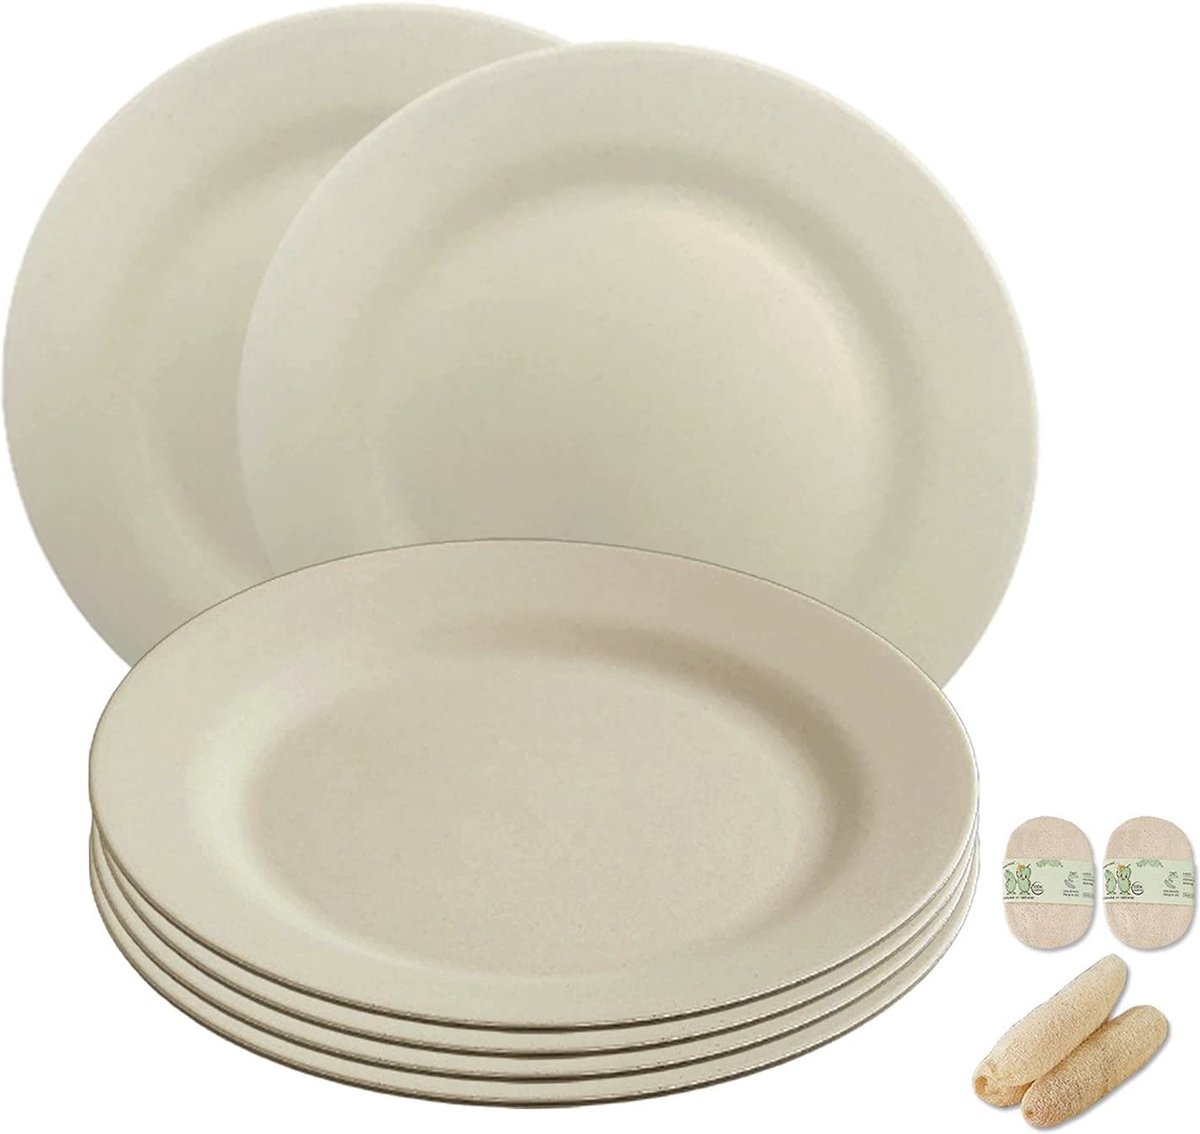 onbreekbare borden van 25 cm, 6-delige set, herbruikbare platte borden met luffas-afwasborstels, eetborden van kunststof, licht voor party/camping/BBQ/pizza, magnetronbestendig, vaatwasmachinebestendig, BPA-vrij (beige)